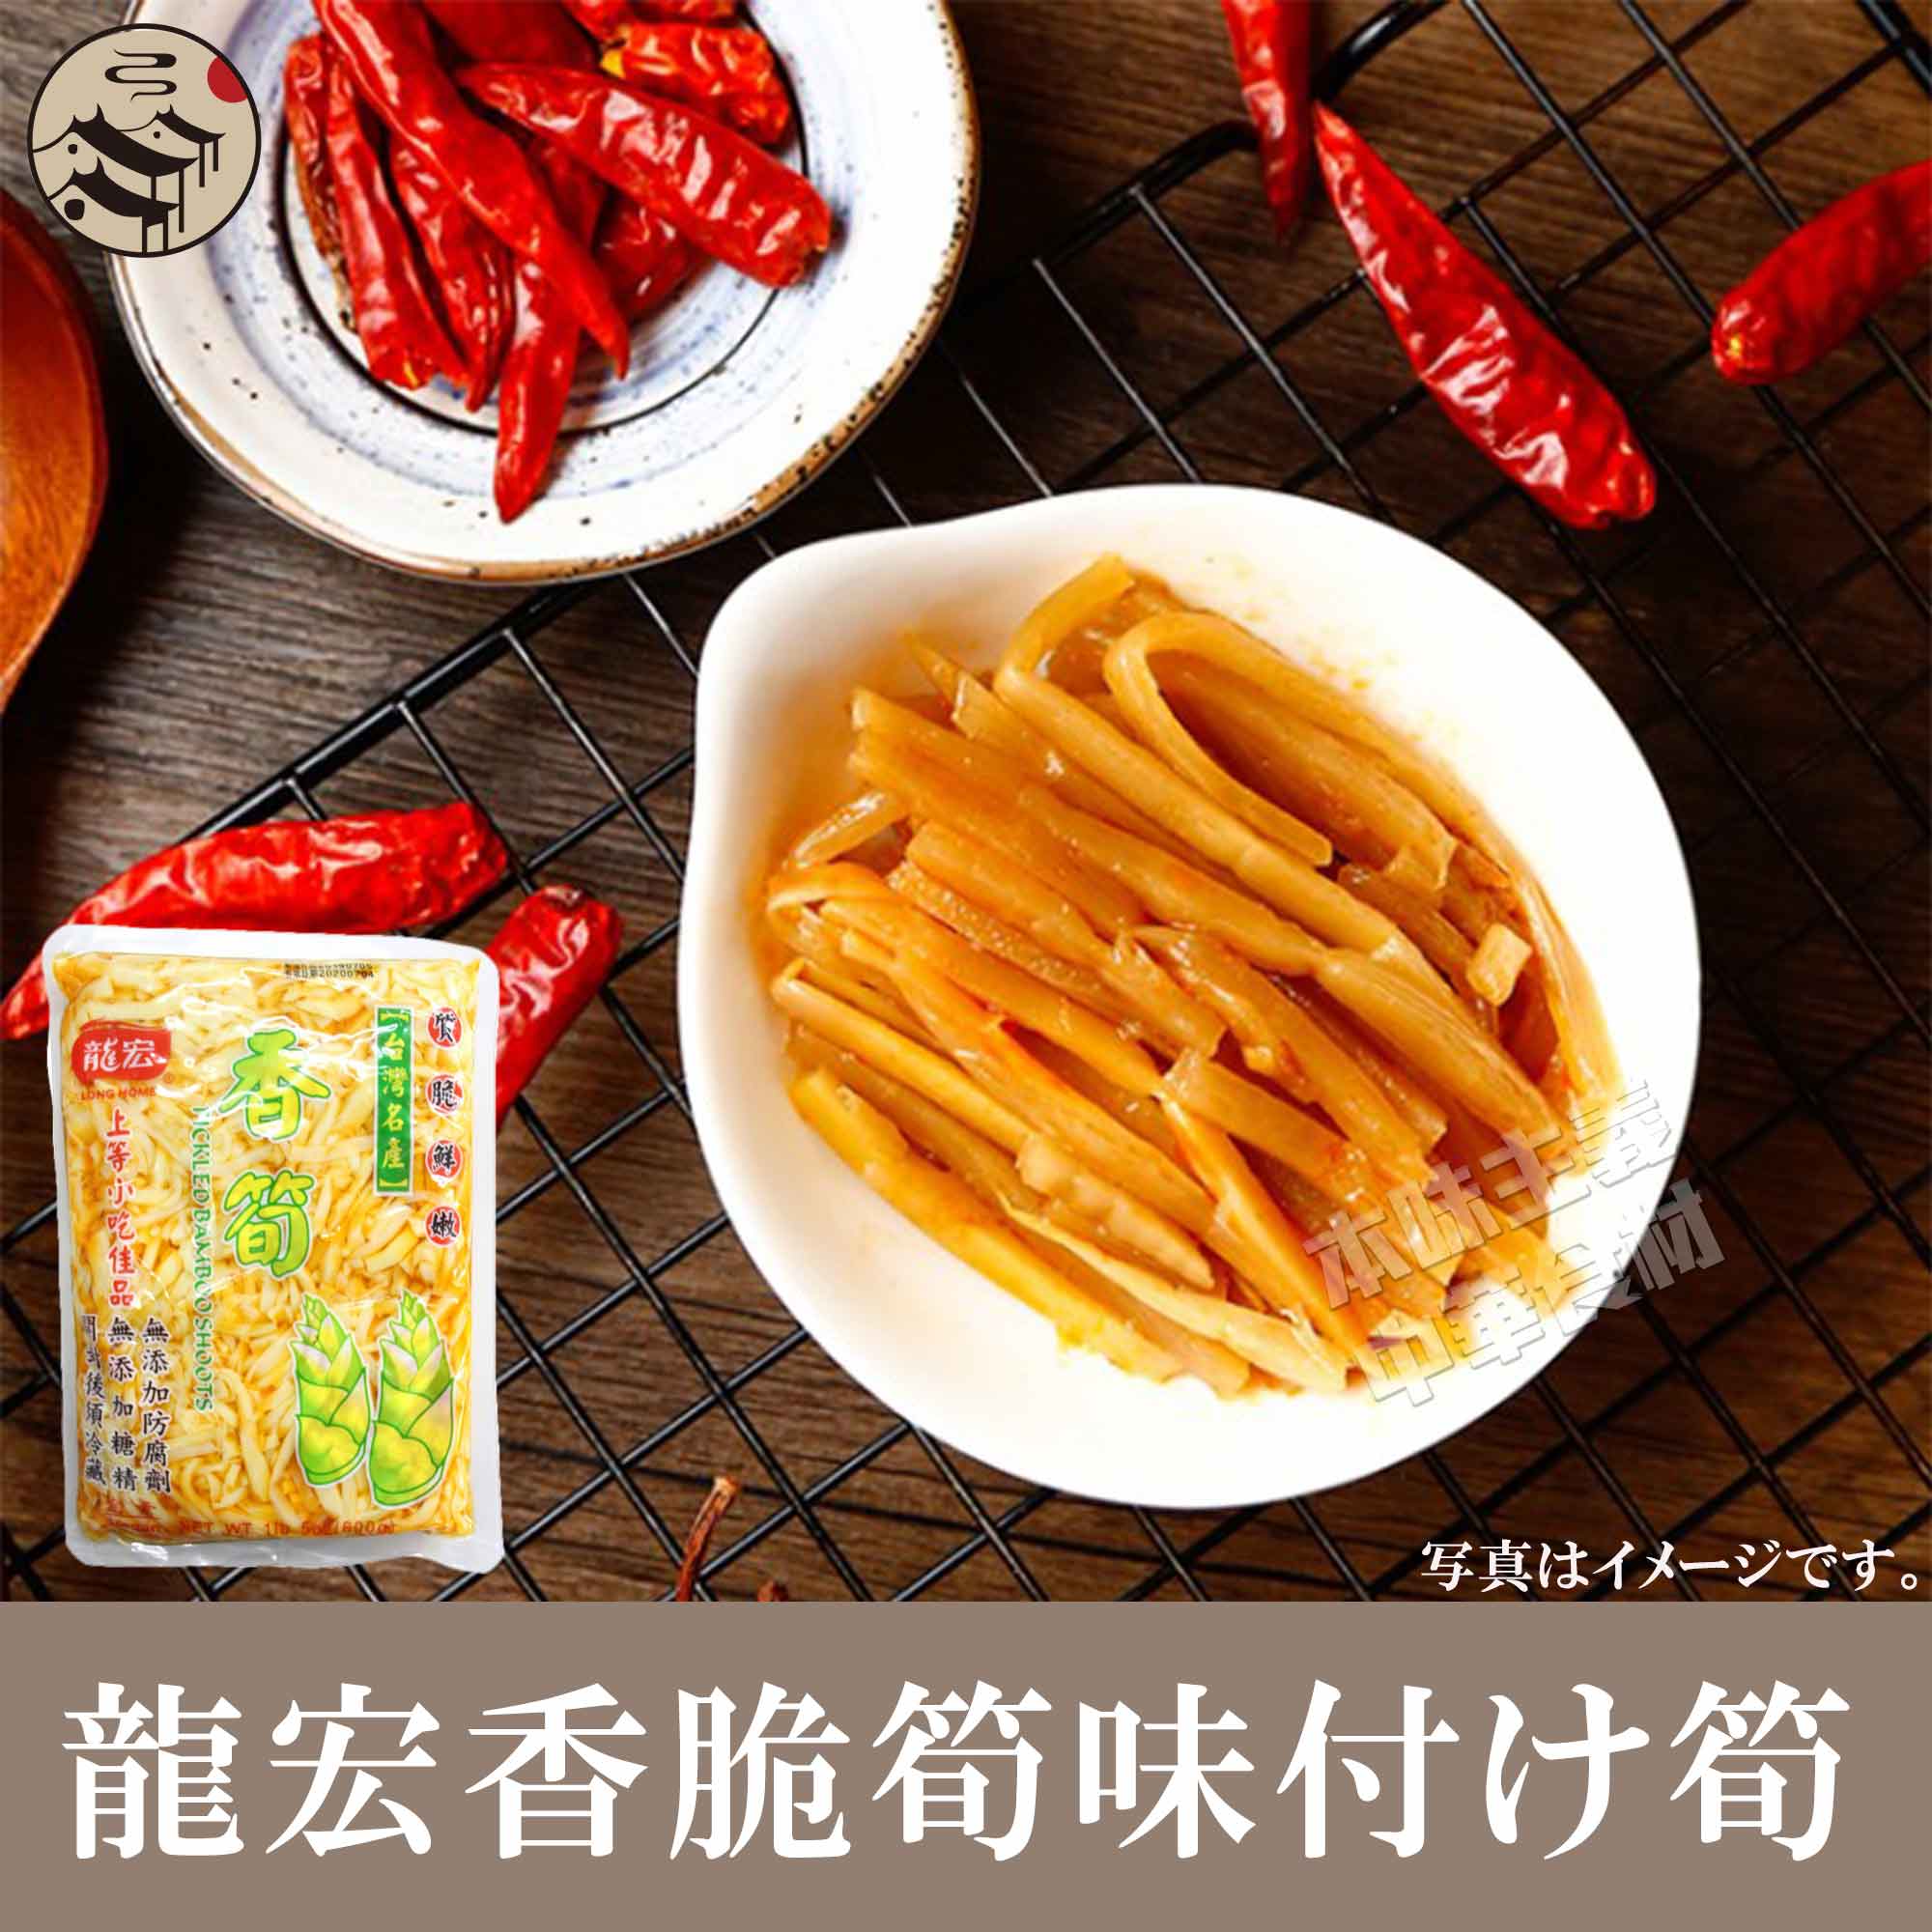 龍宏香脆筍（味付け筍）ラー油漬けタケノコ 600g メンマ おかず 竹の子 辣油 漬物 台湾輸入 おつまみ